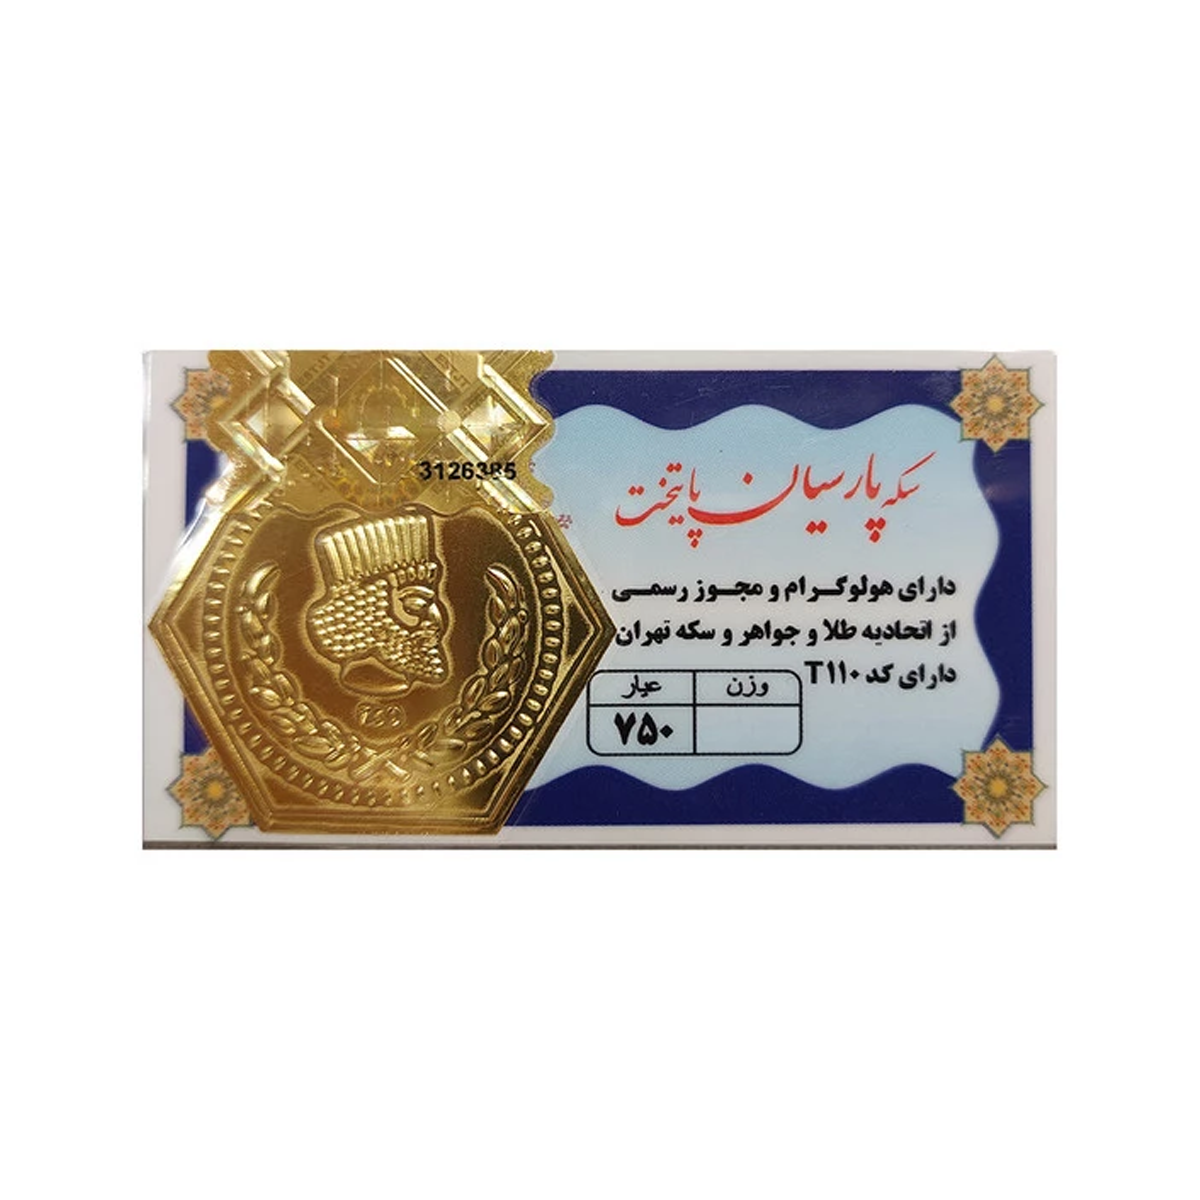 سکه پارسیان 18 عیار پایتخت